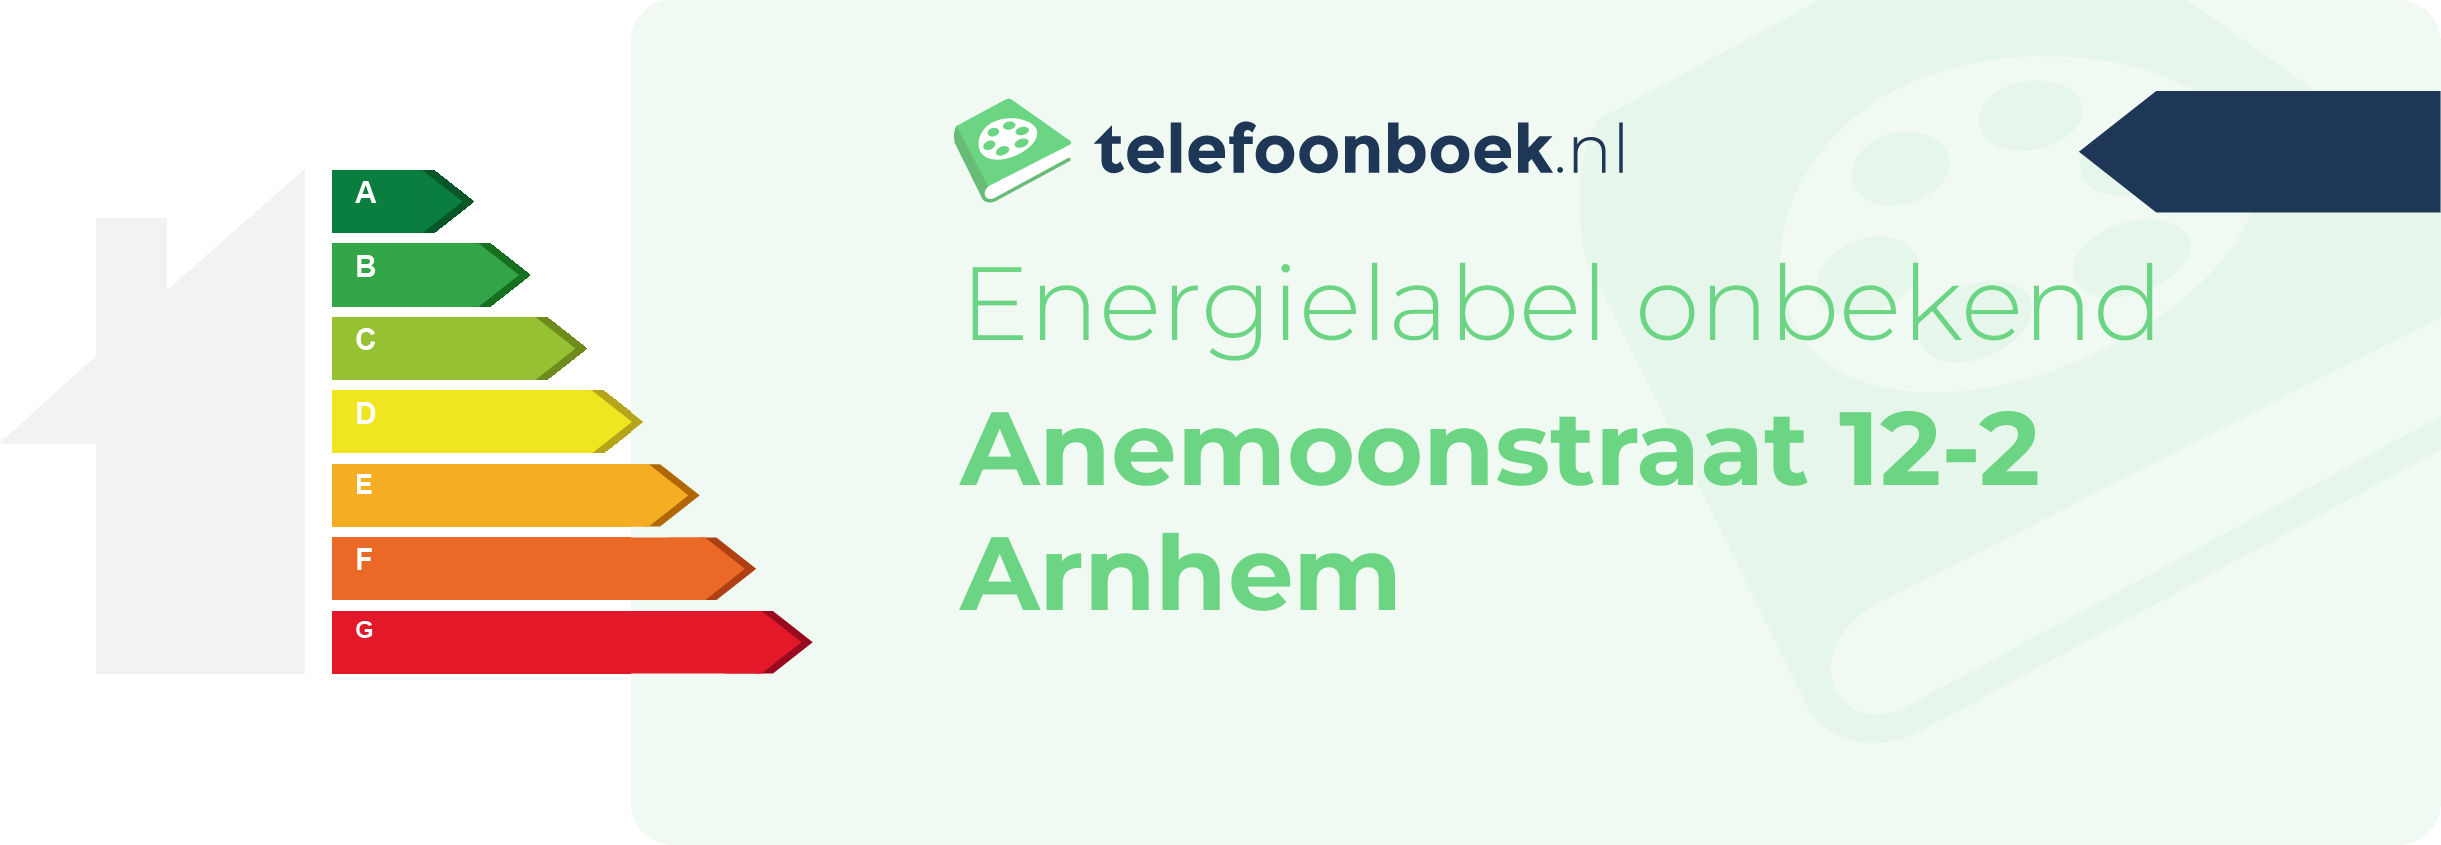 Energielabel Anemoonstraat 12-2 Arnhem